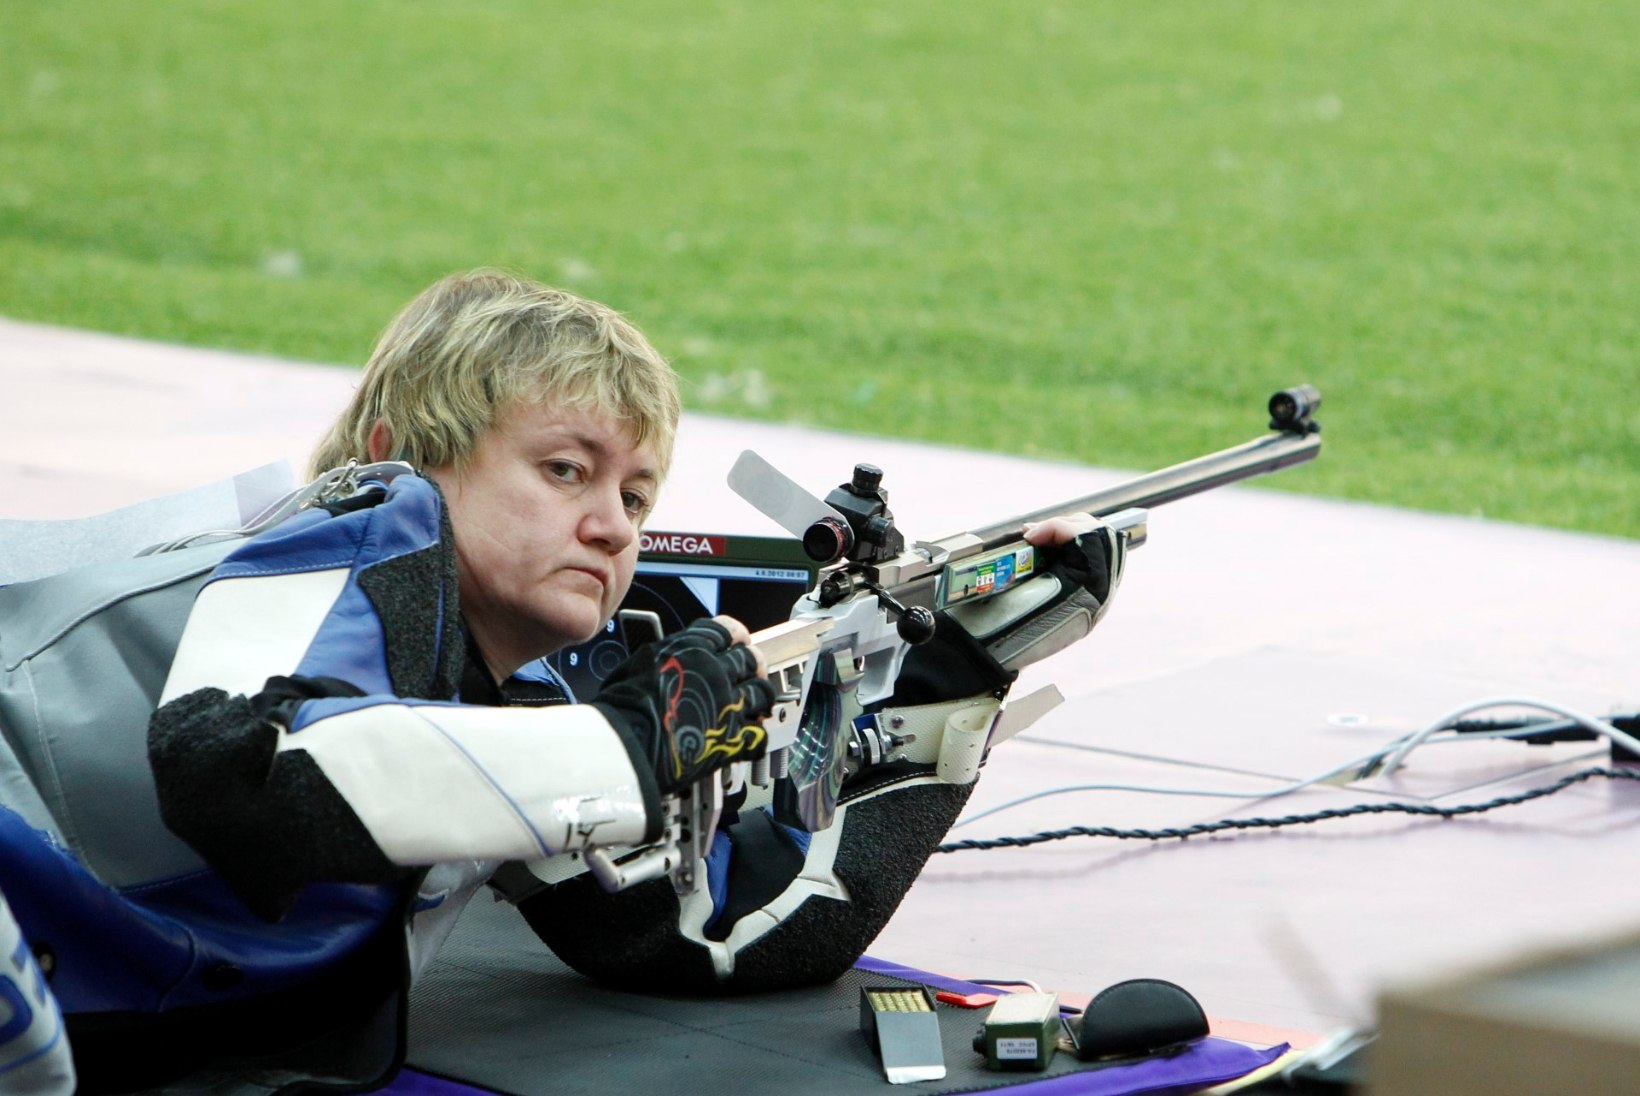 Eesti võitis esimese naiskondliku laskmise MM-medali